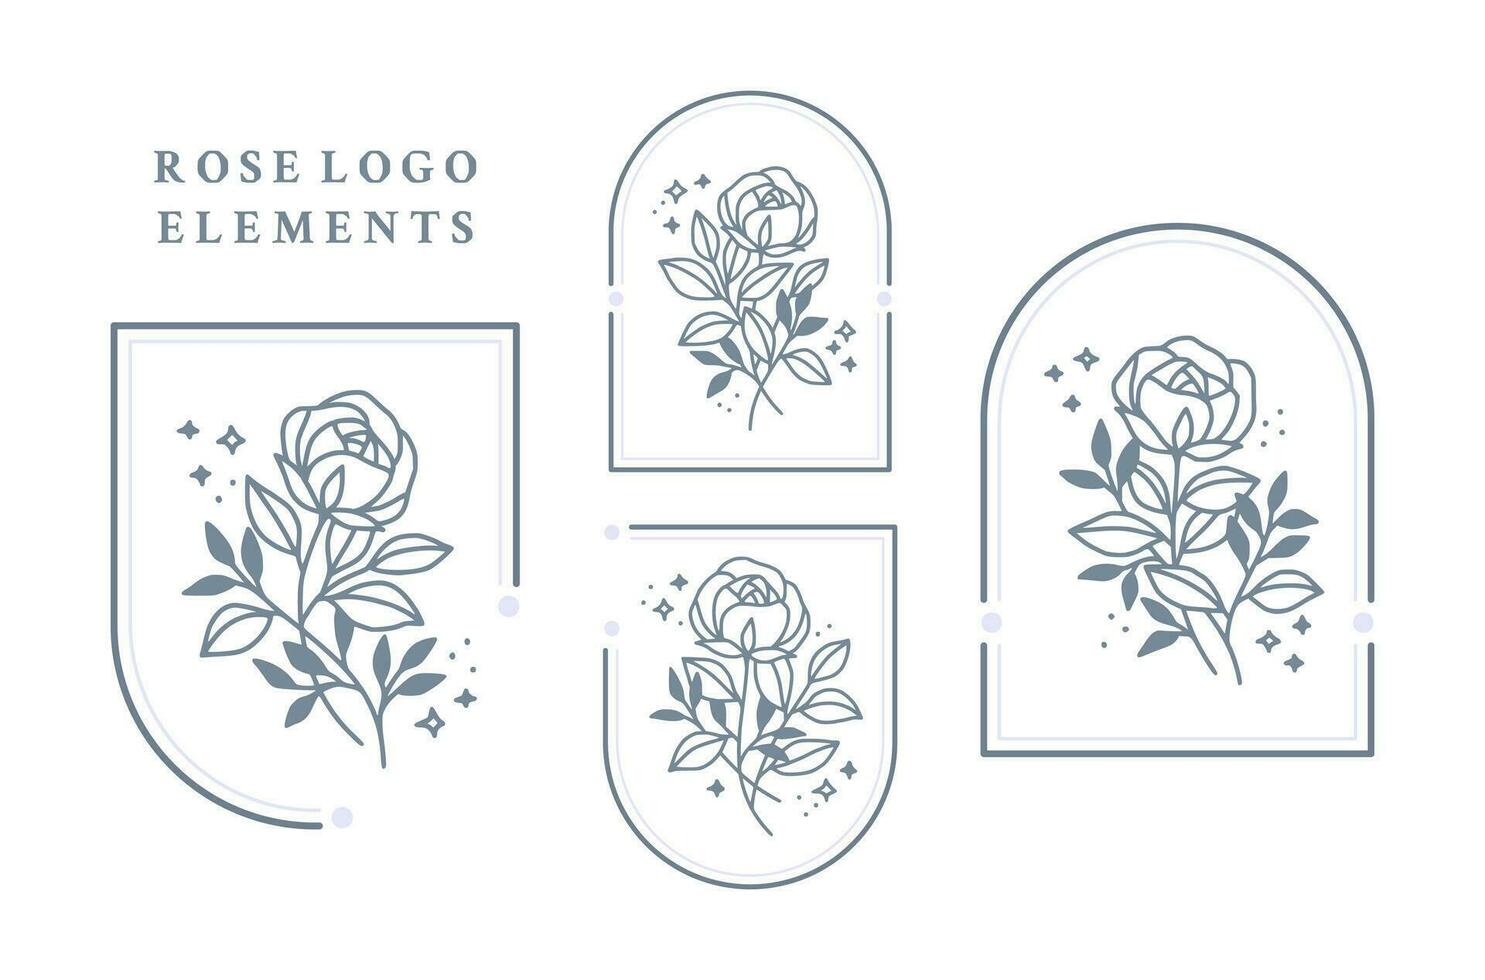 Vintage ▾ mano disegnato rosa fiore logo elemento collezione con telaio vettore